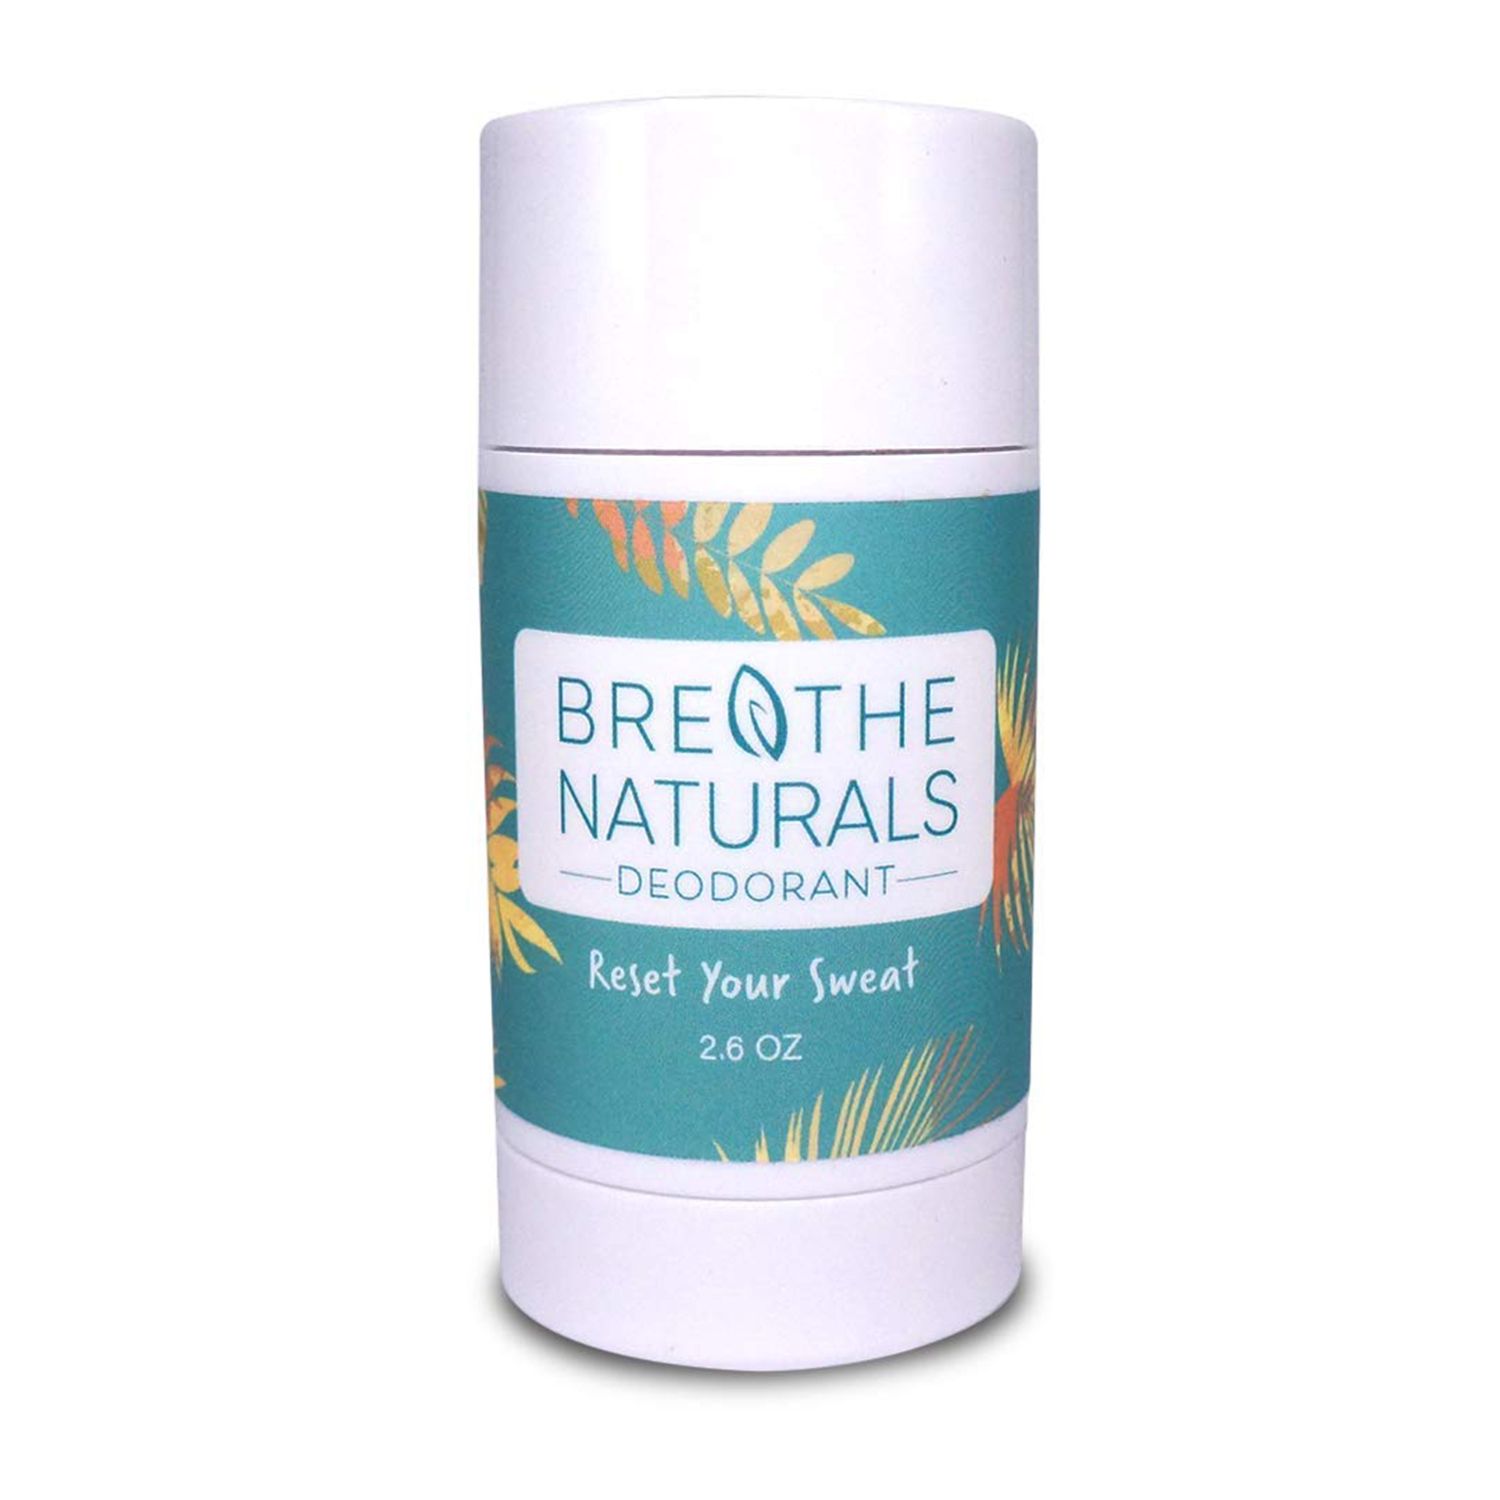 Este refrescante desodorante natural es el único que me mantiene libre de olores durante 24 horas completas